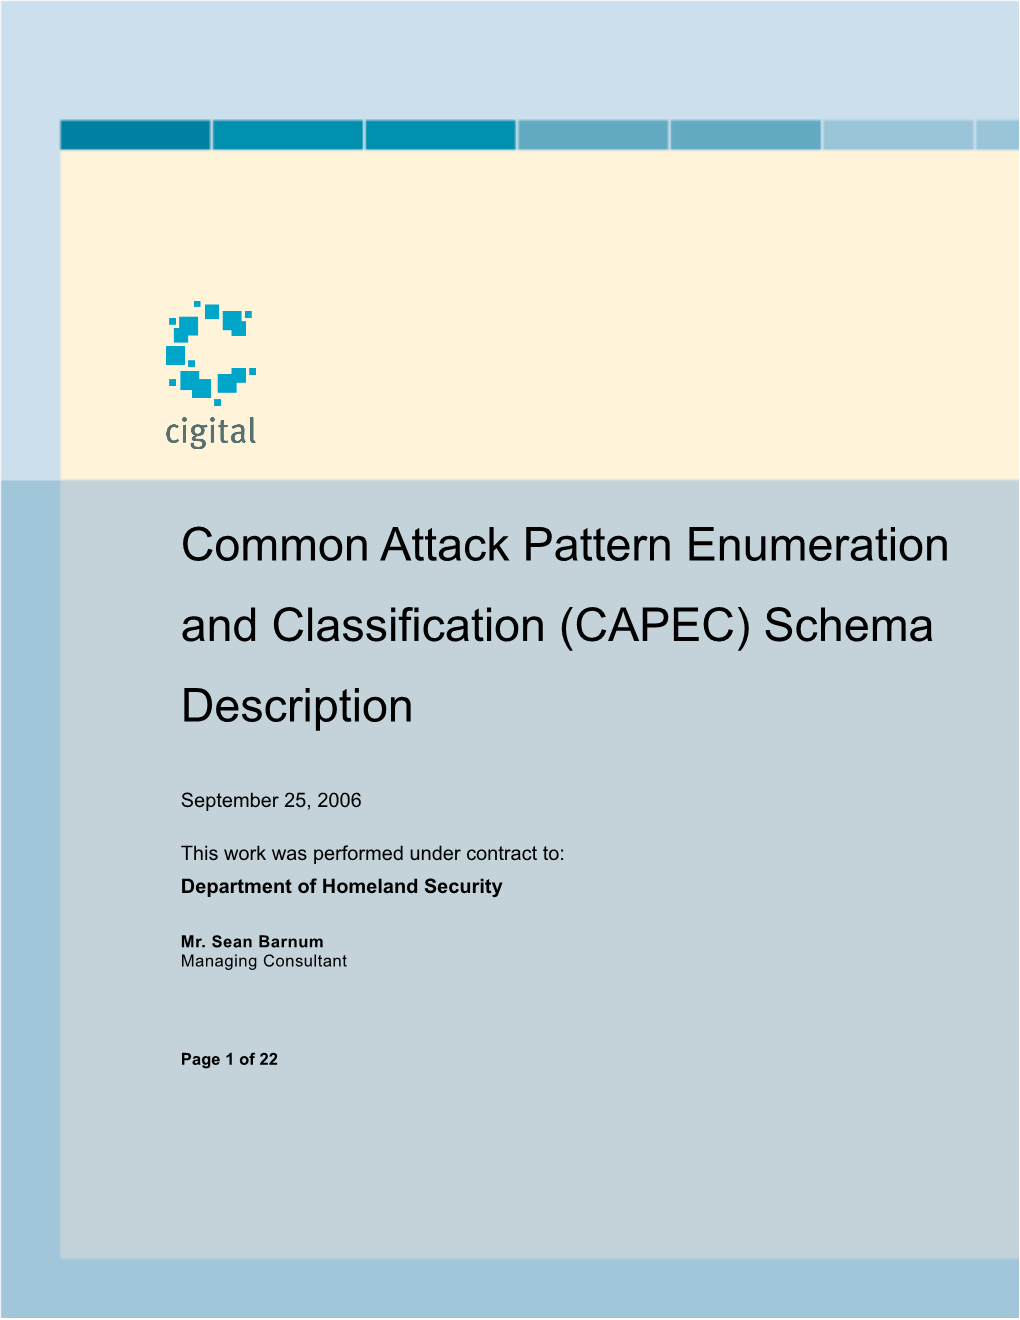 Common Attack Pattern Enumeration and Classification (CAPEC) Schema Description